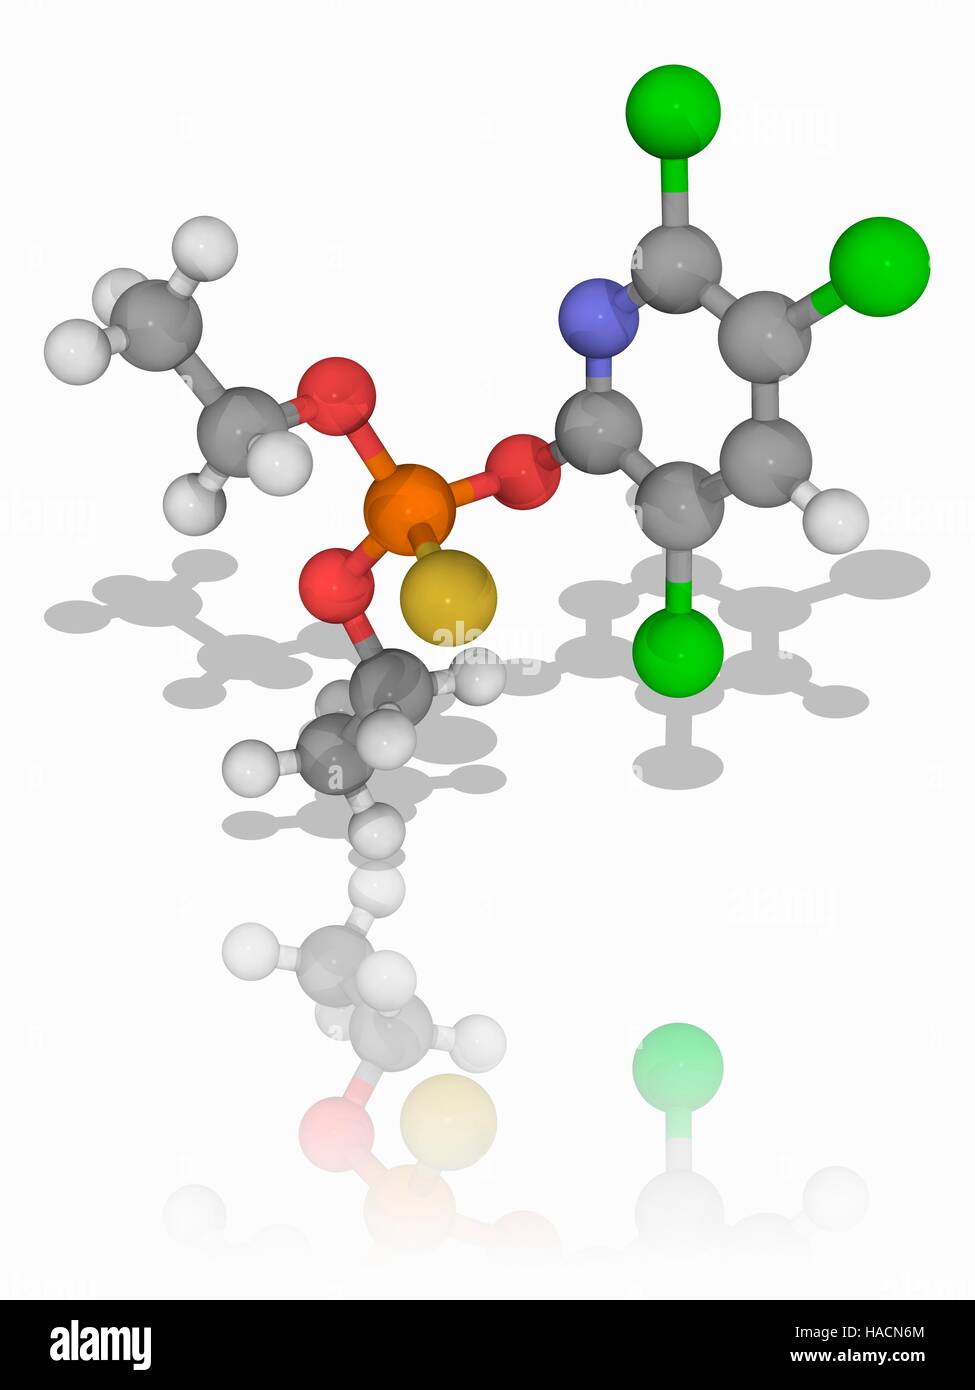 Chlorpyrifos. Il modello molecolare dell'insetticida organofosfato chlorpyrifos (C9.H11.Cl3.N.O3.P.S), largamente utilizzati in agricoltura. Uccide gli insetti agendo sull'insetto del sistema nervoso. Gli atomi sono rappresentati da sfere e sono codificati a colori: carbonio (grigio), Idrogeno (bianco), Azoto (blu), Ossigeno (rosso), zolfo (giallo), Fosforo (arancione) e cloro (verde). Illustrazione. Foto Stock